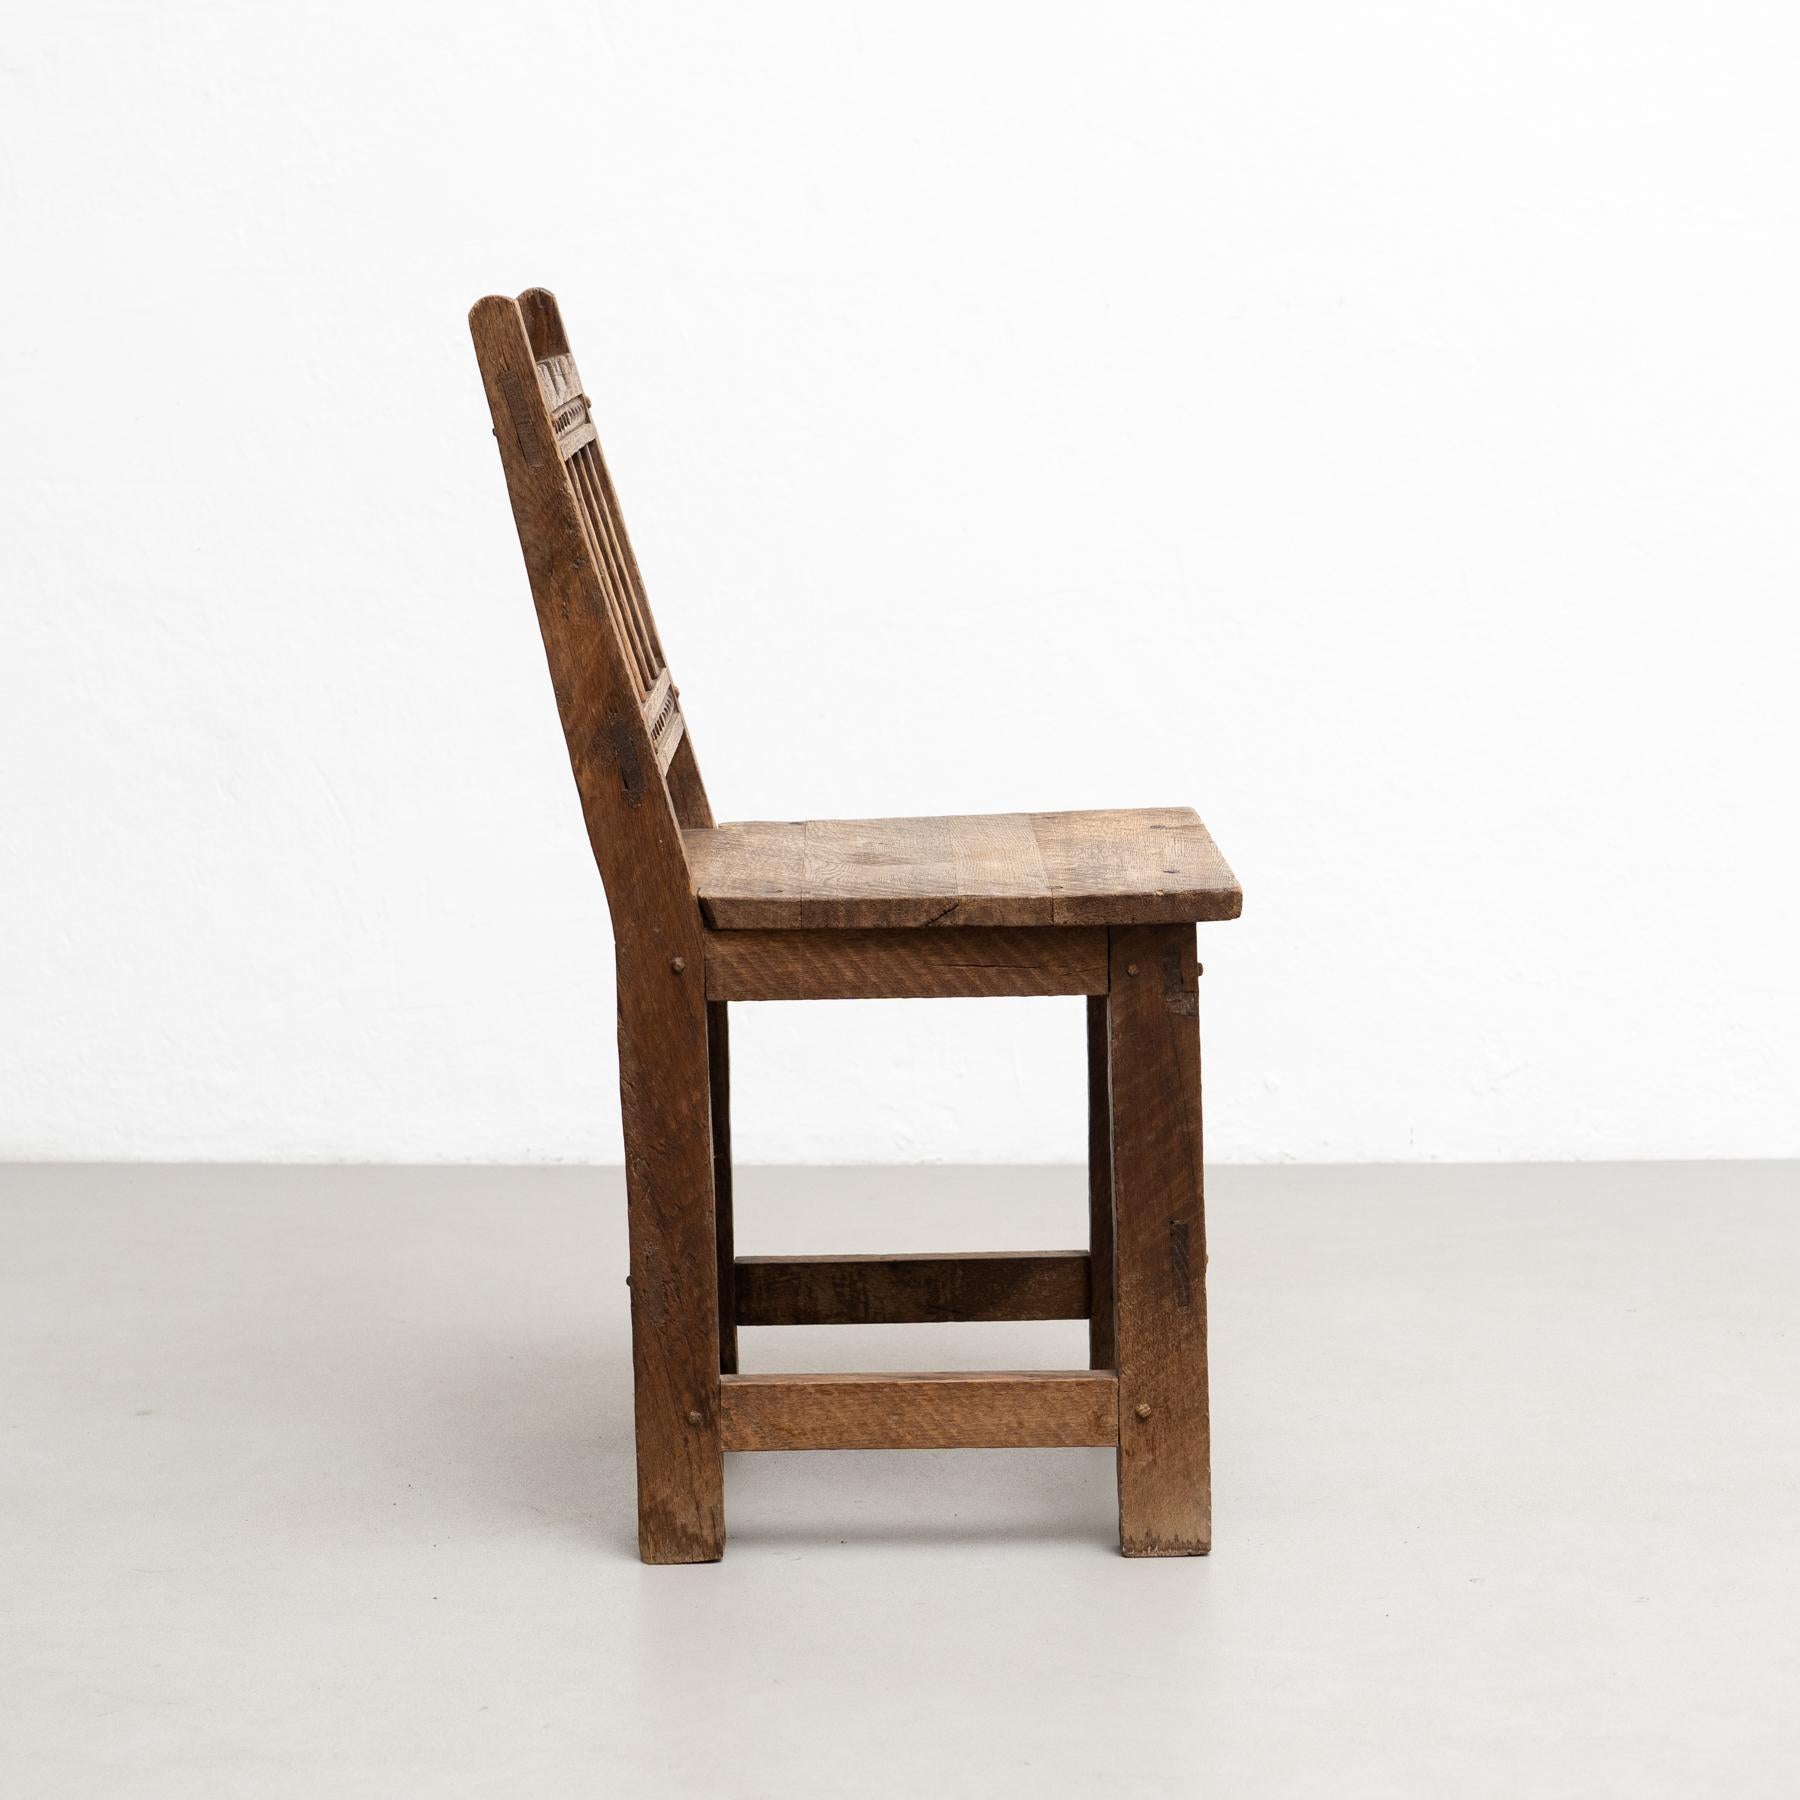 Conjunto de cuatro sillas de madera racionalistas modernas de mediados de siglo, encanto rústico, hacia 1940 mediados del siglo XX